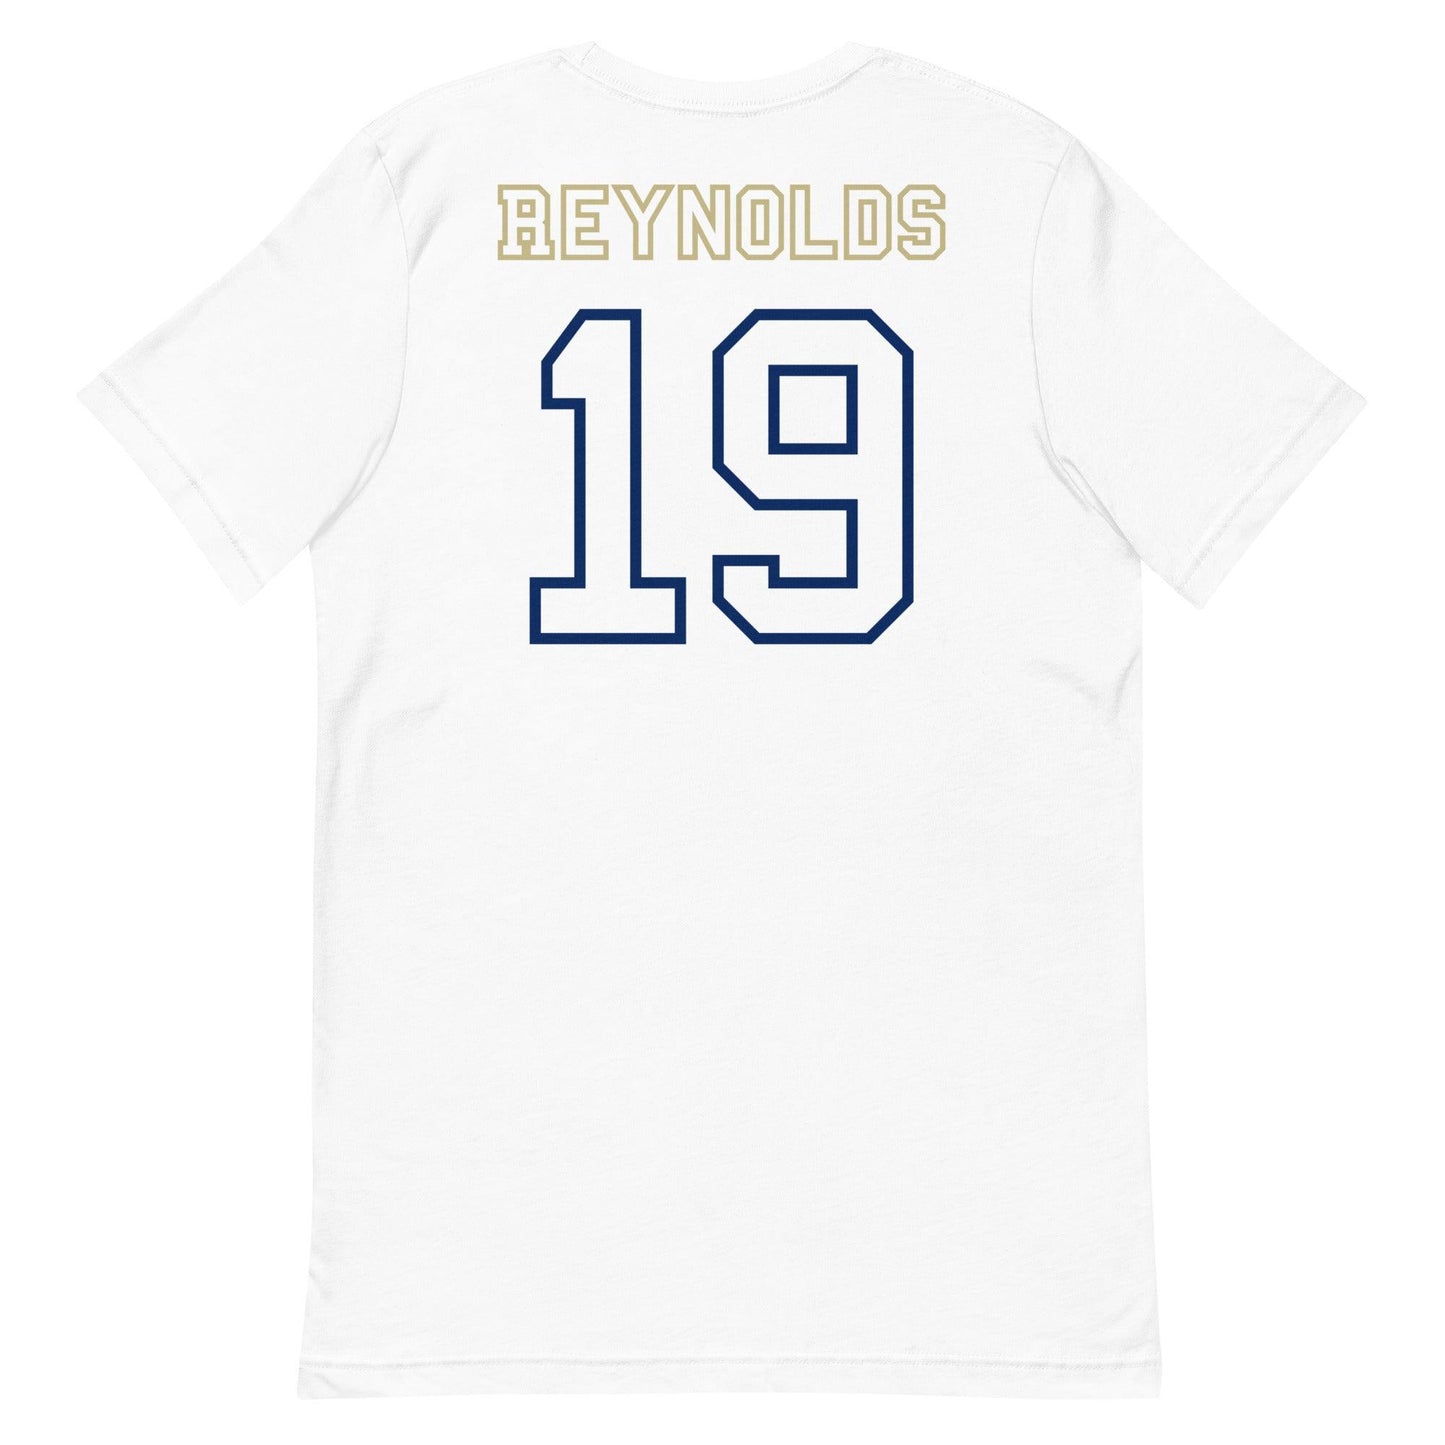 Keenan Reynolds "Jersey" t-shirt - Fan Arch